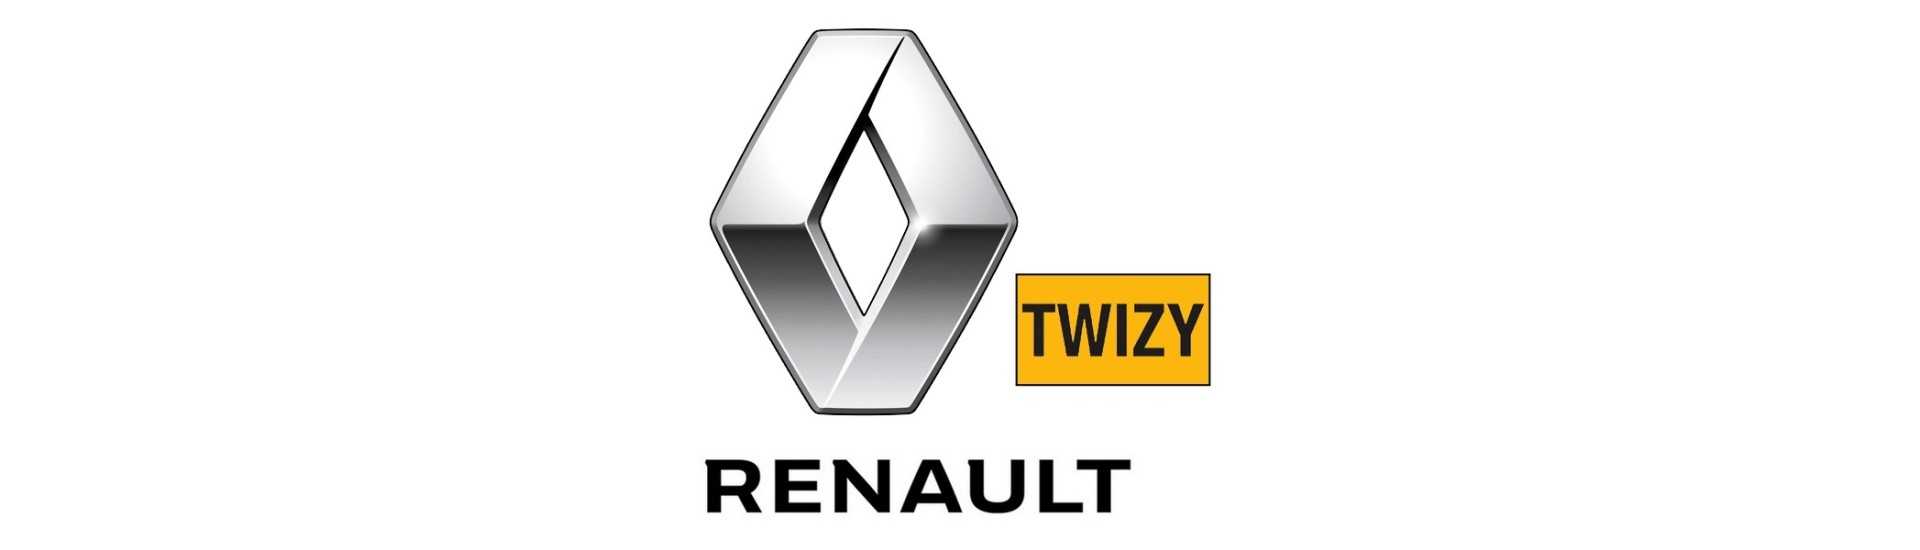 Relais / elektronische module für auto ohne lizenz Renault Twizy